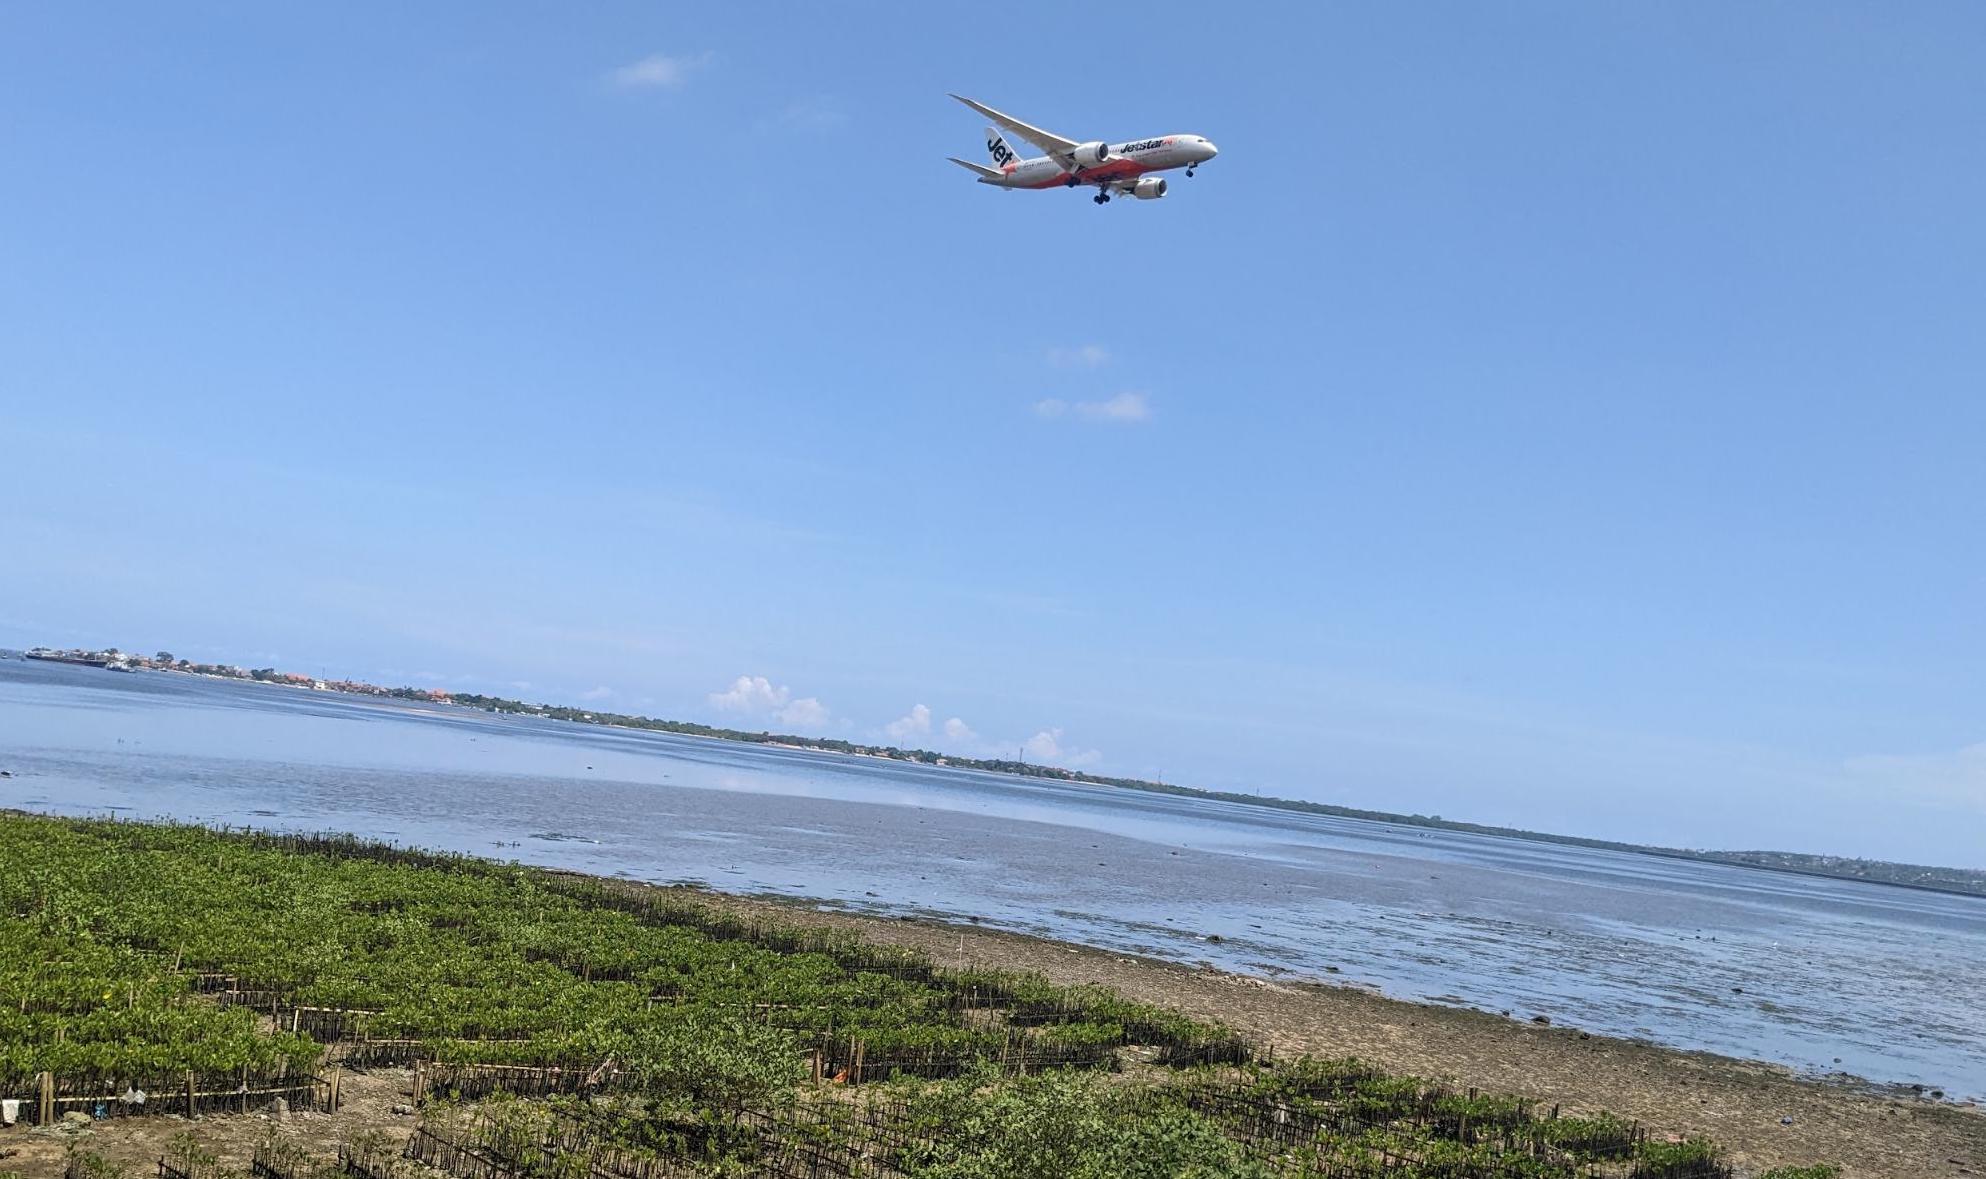 Jetstar flight from Melbourne flying over mangroves